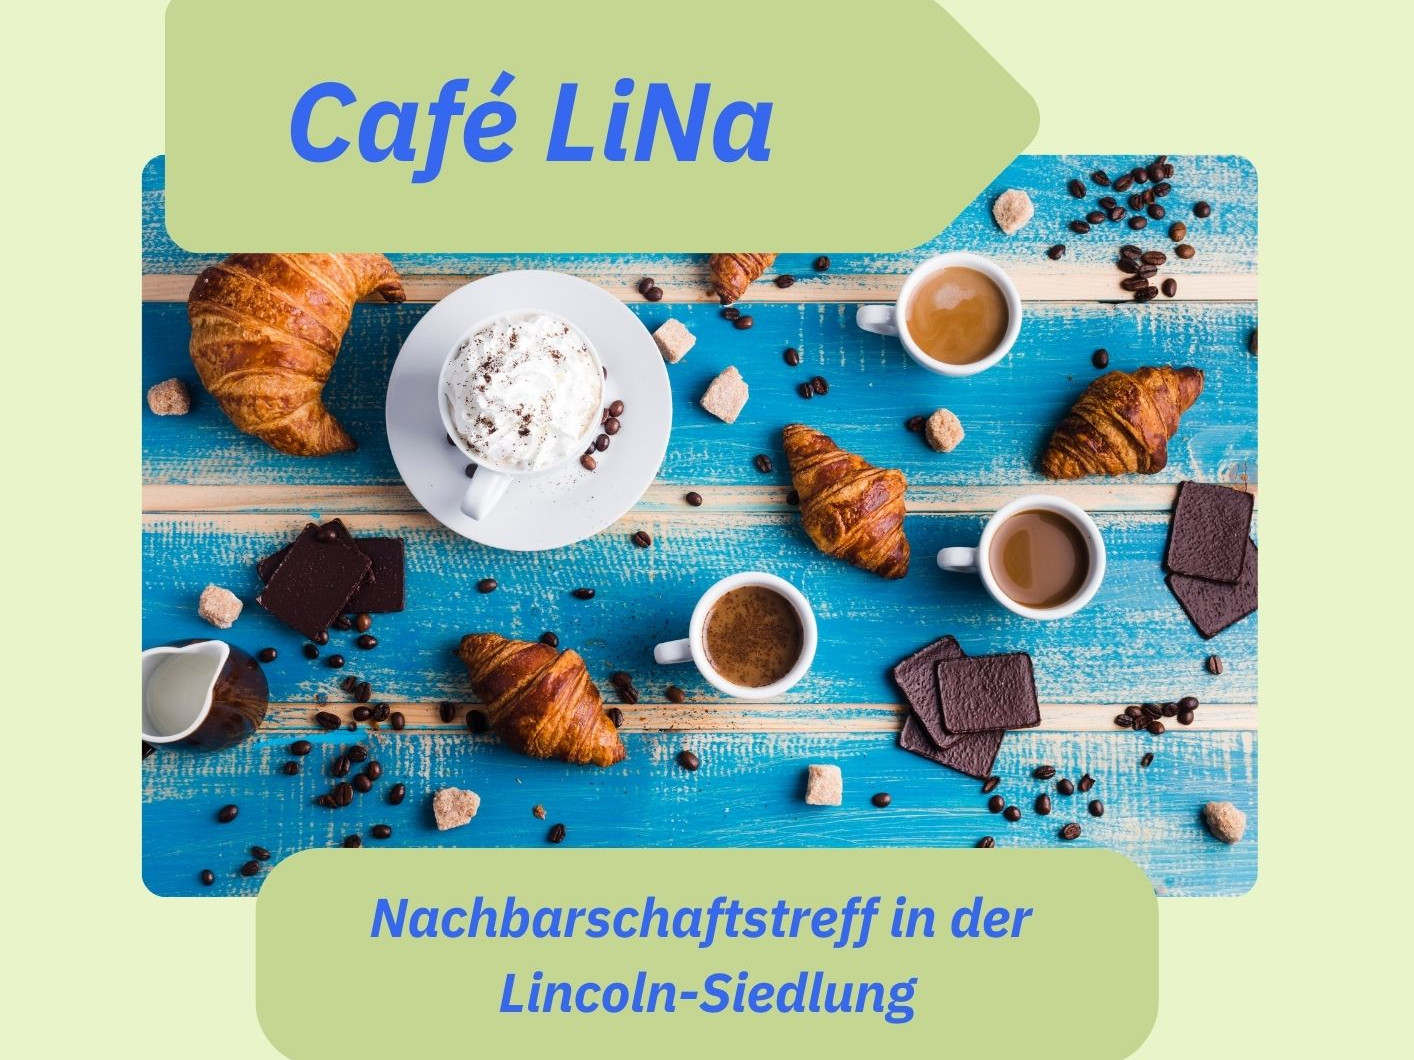 Café LiNa erstmals am 31. Juli